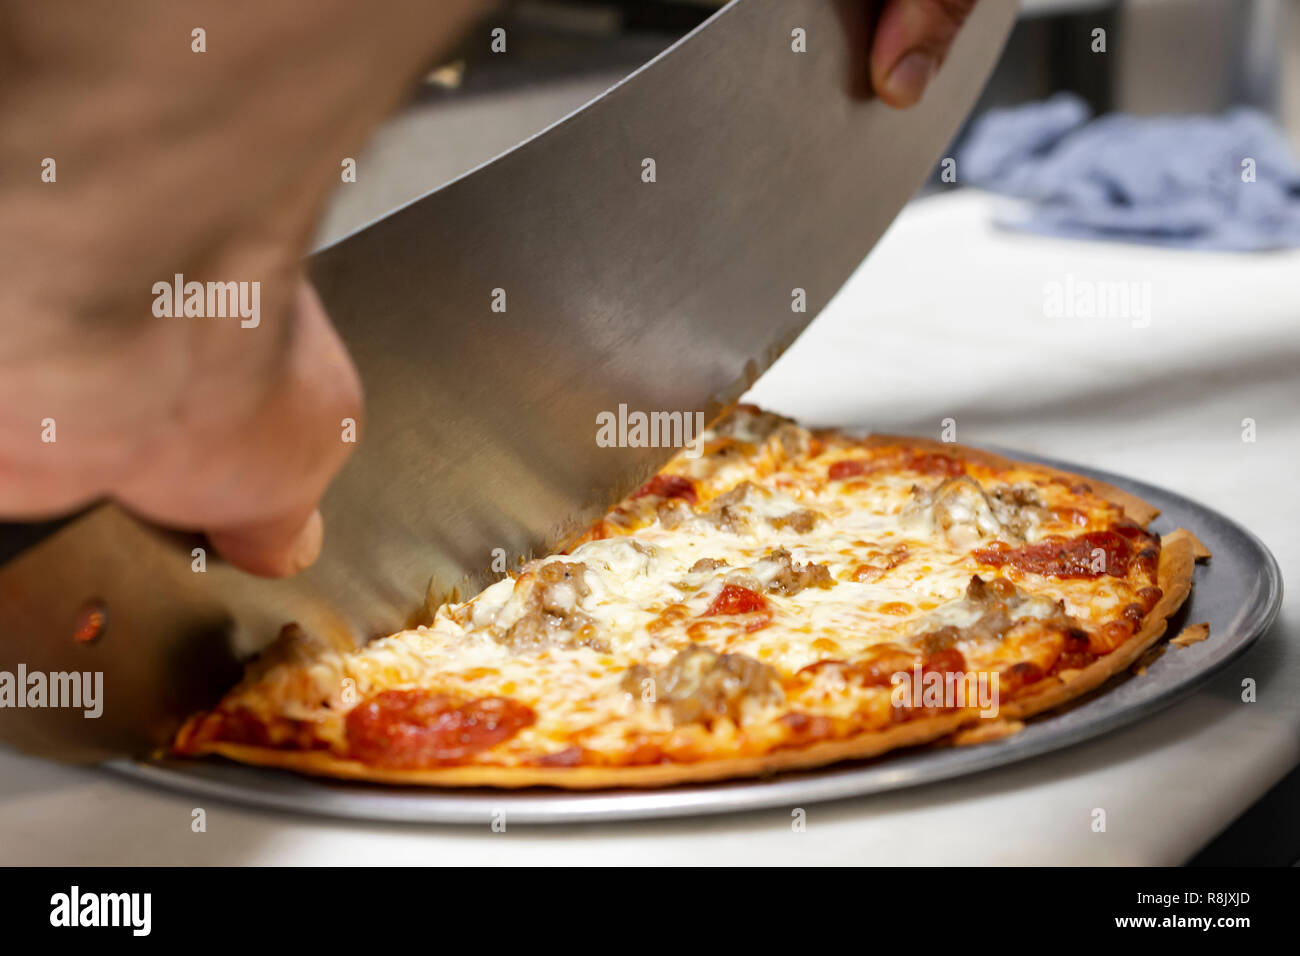 Koch Schneiden eine Pizza mit einem mezzaluna in einem Restaurant. Nahaufnahme von der Seite. Hände nur sichtbar. Stockfoto